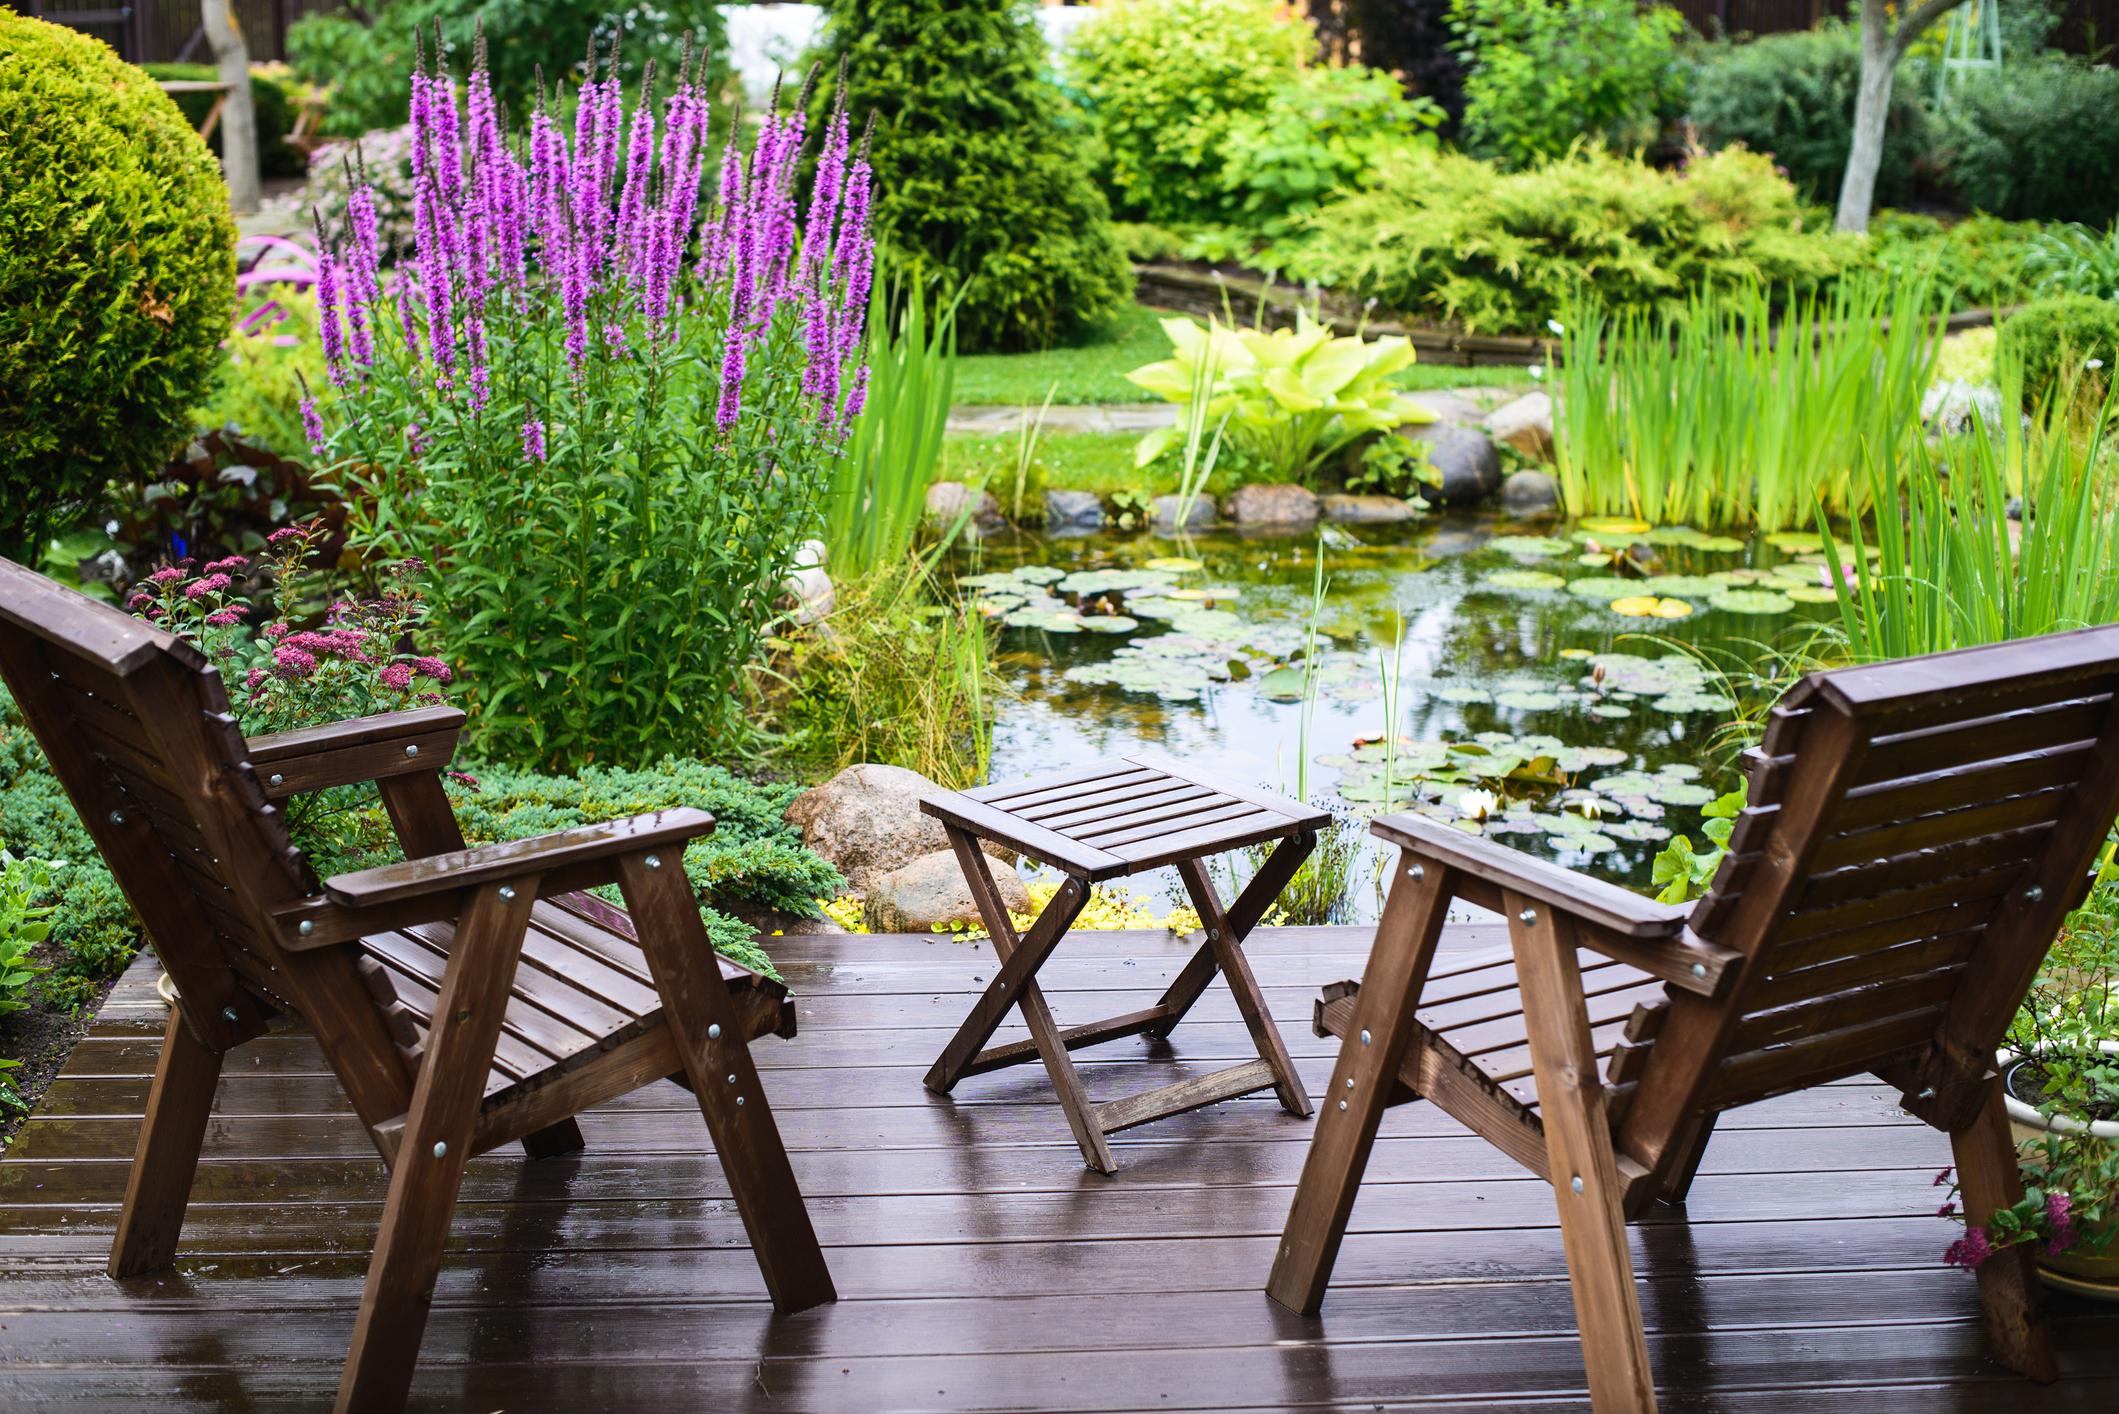 Un étang ou un biotope offre une qualité de vie et favorise la biodiversité dans le jardin.